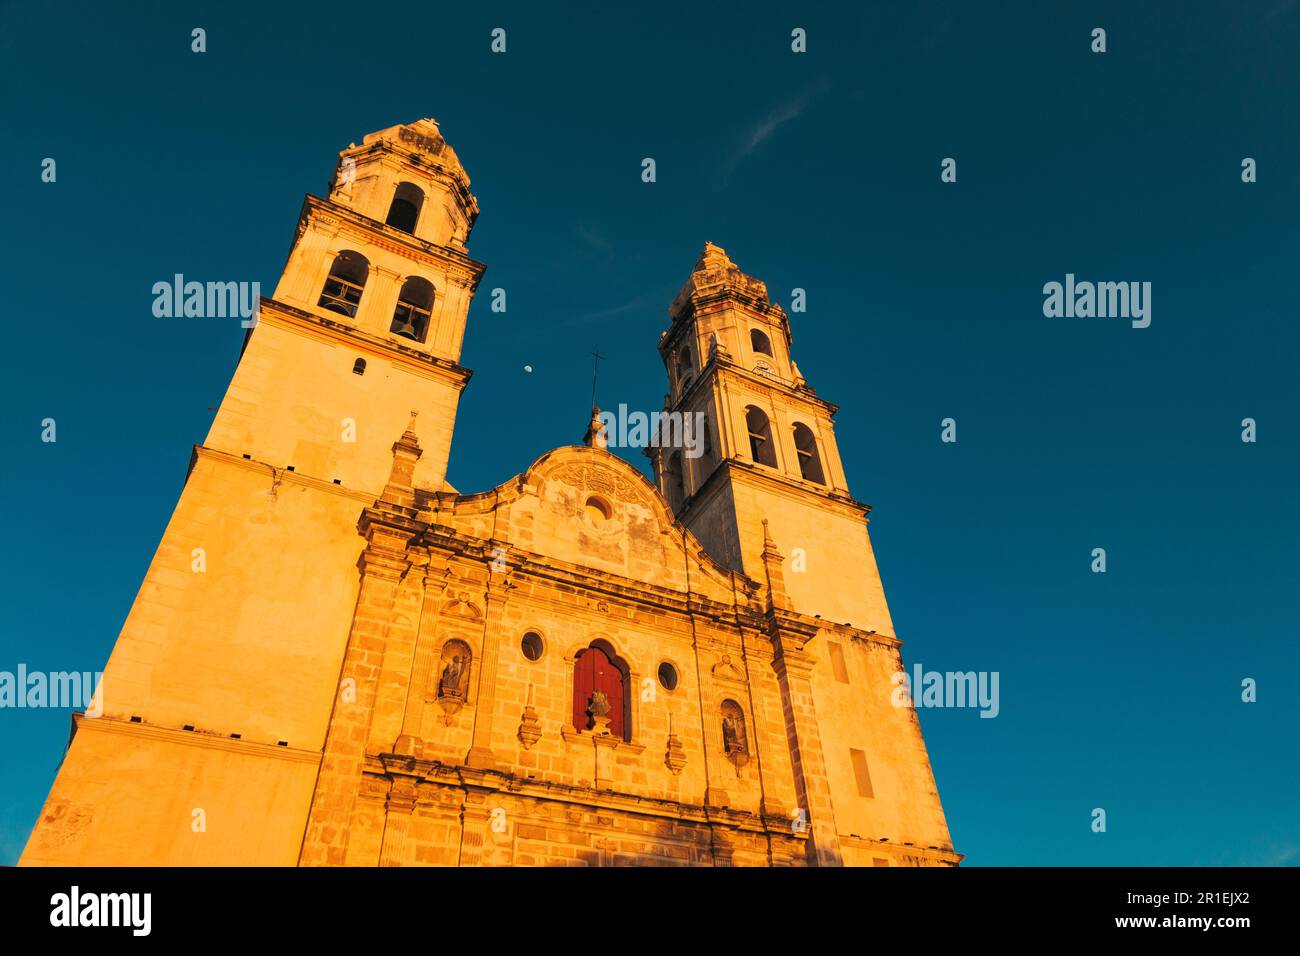 Le soleil se couche sur la Catedral de Nuestra Señora de la Inmaculada Concepción, Plaza de la Independencia, Campeche, Mexique Banque D'Images